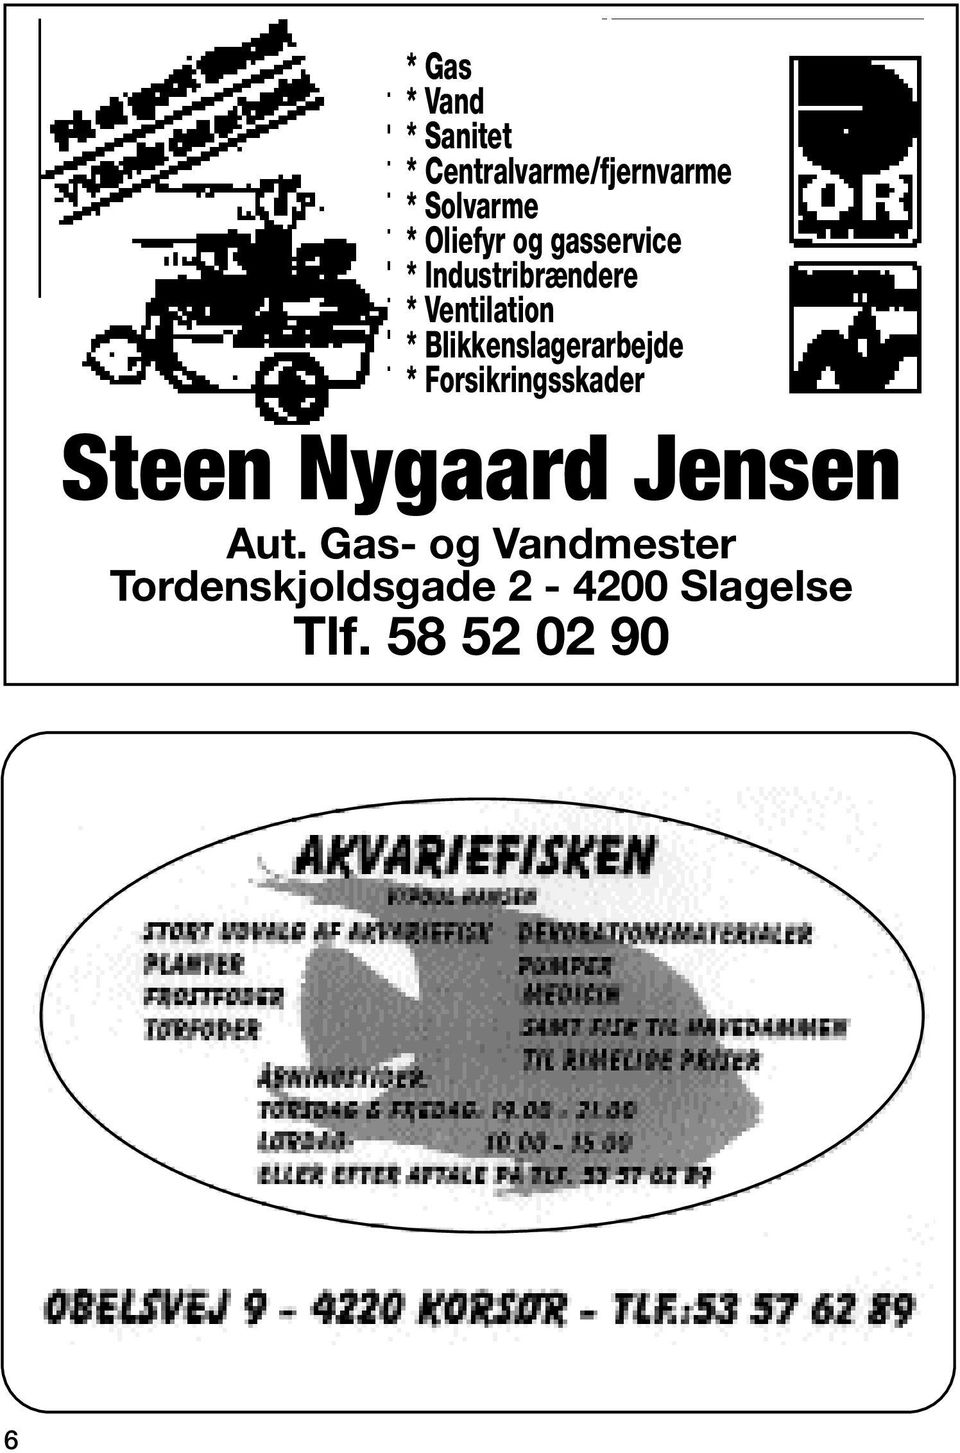 Blikkenslagerarbejde * Forsikringsskader Steen Nygaard Jensen